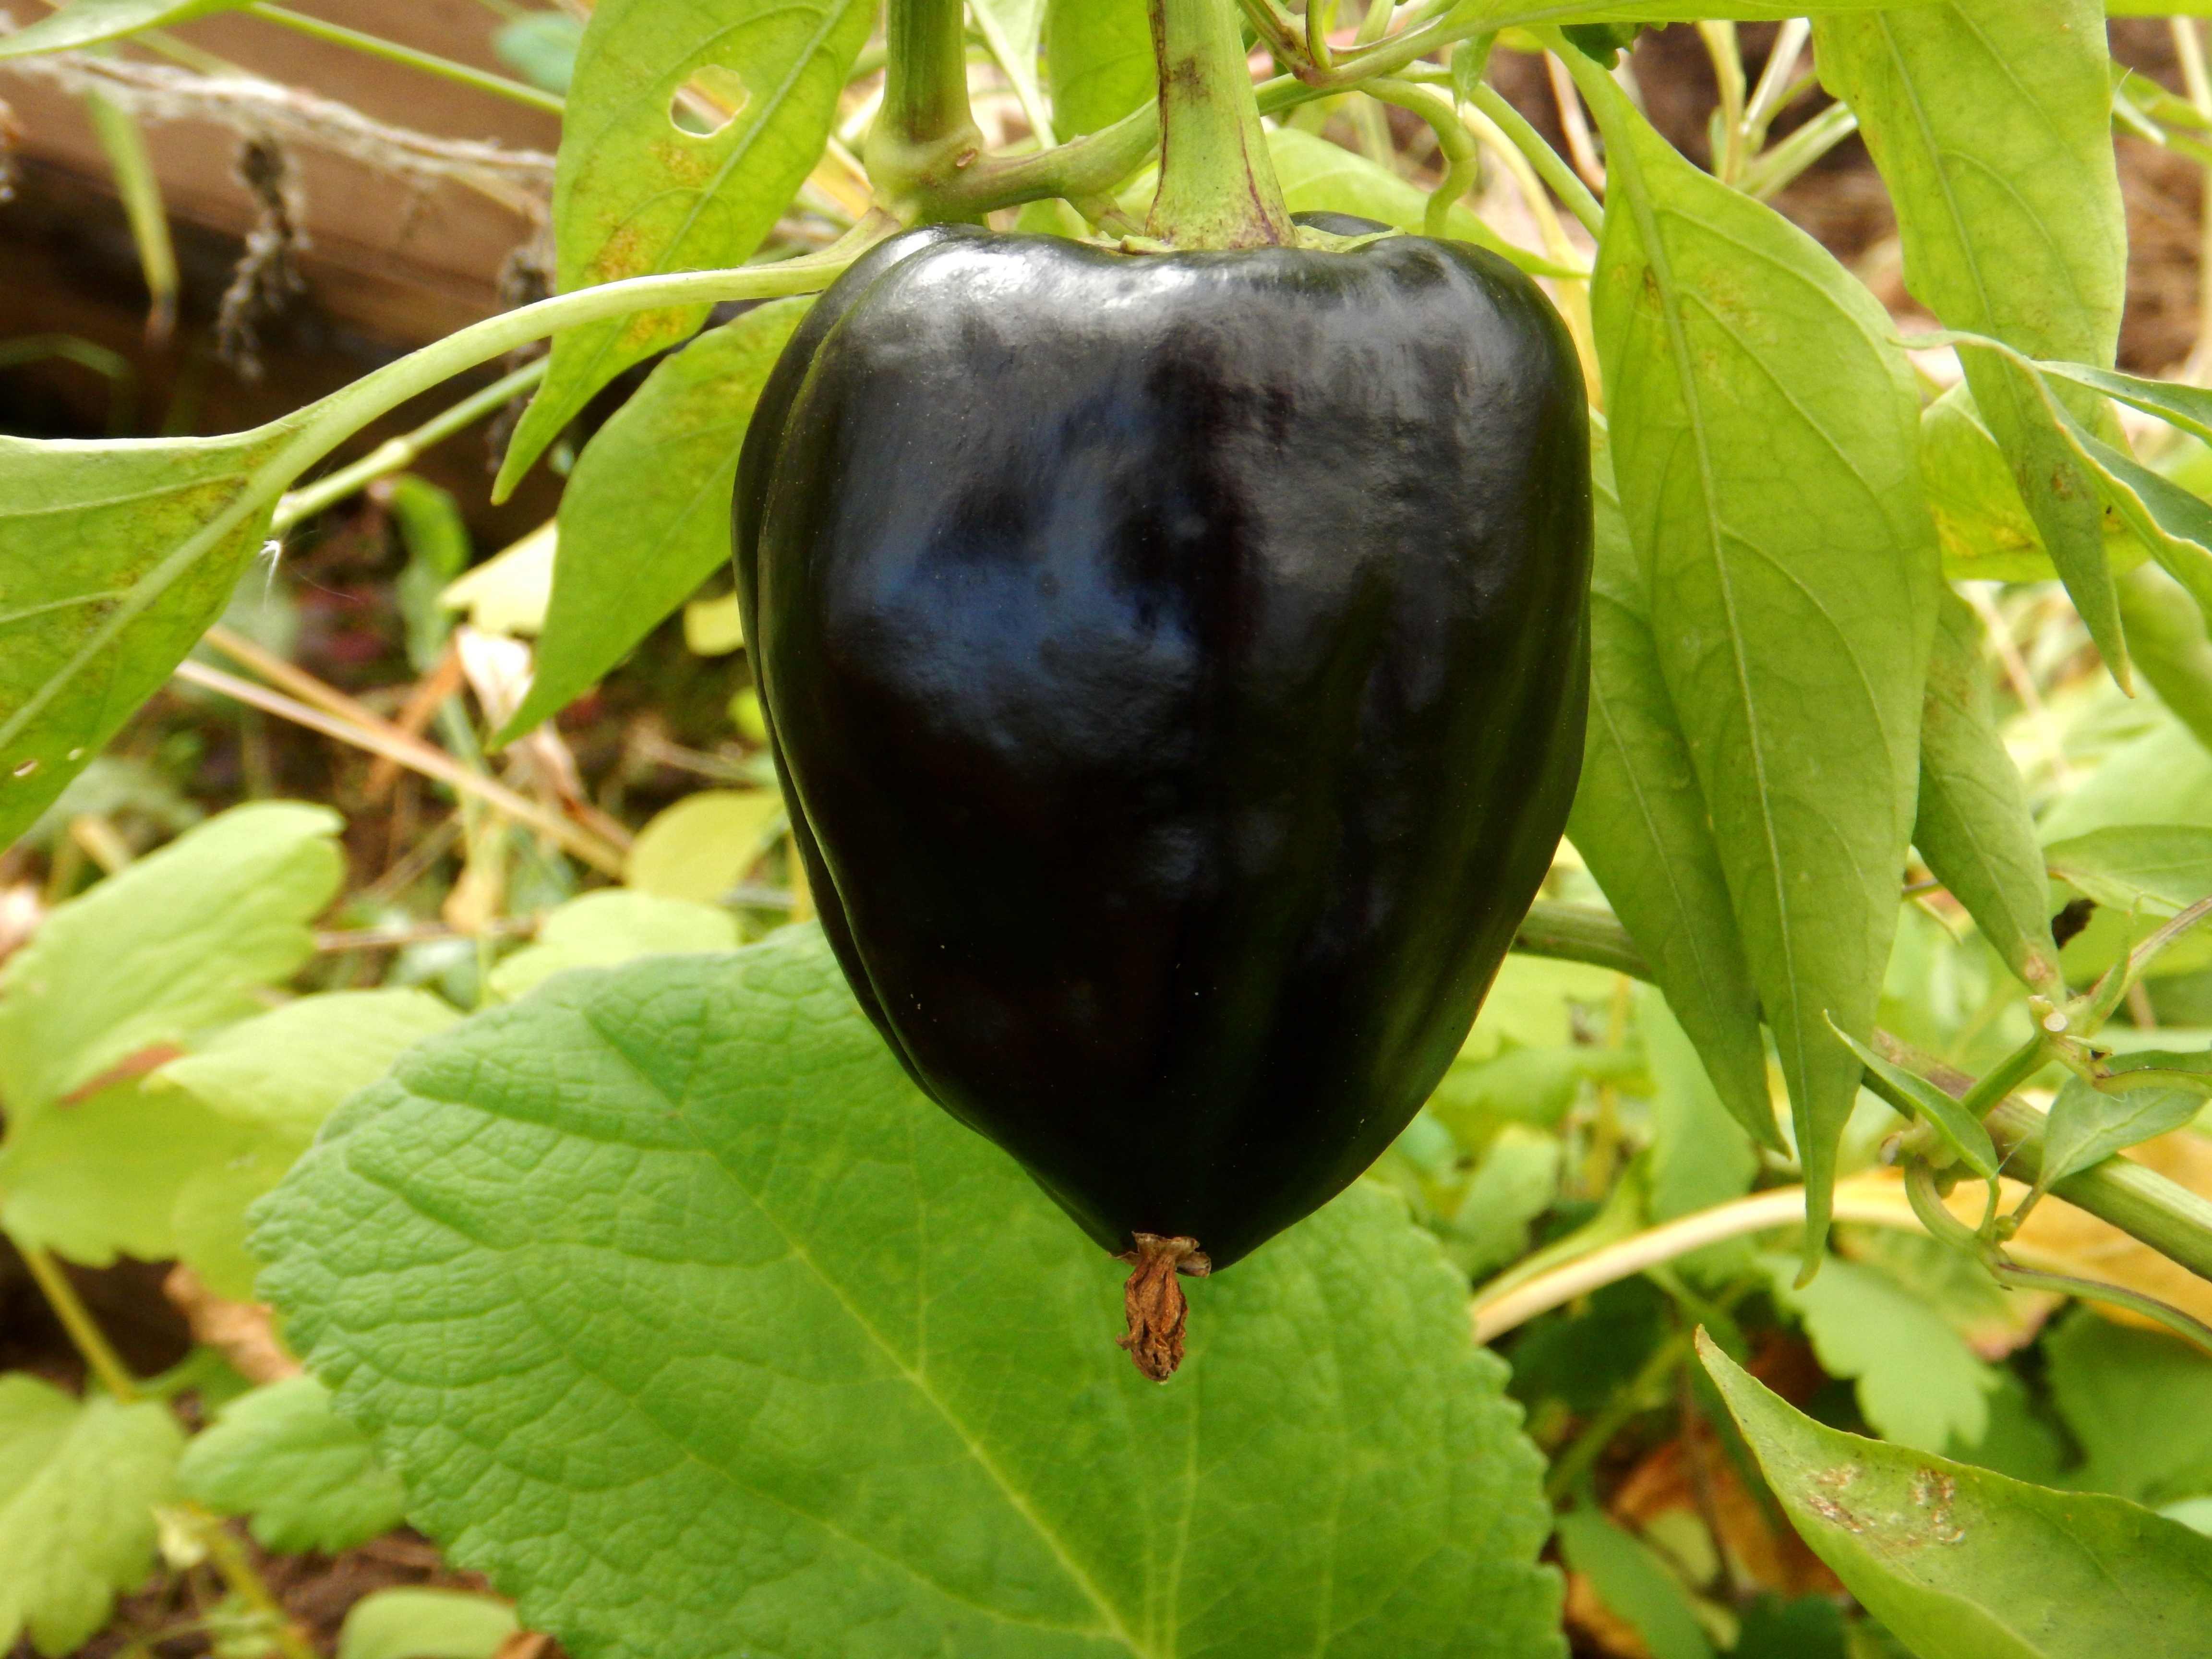 черный болгарский перец фото